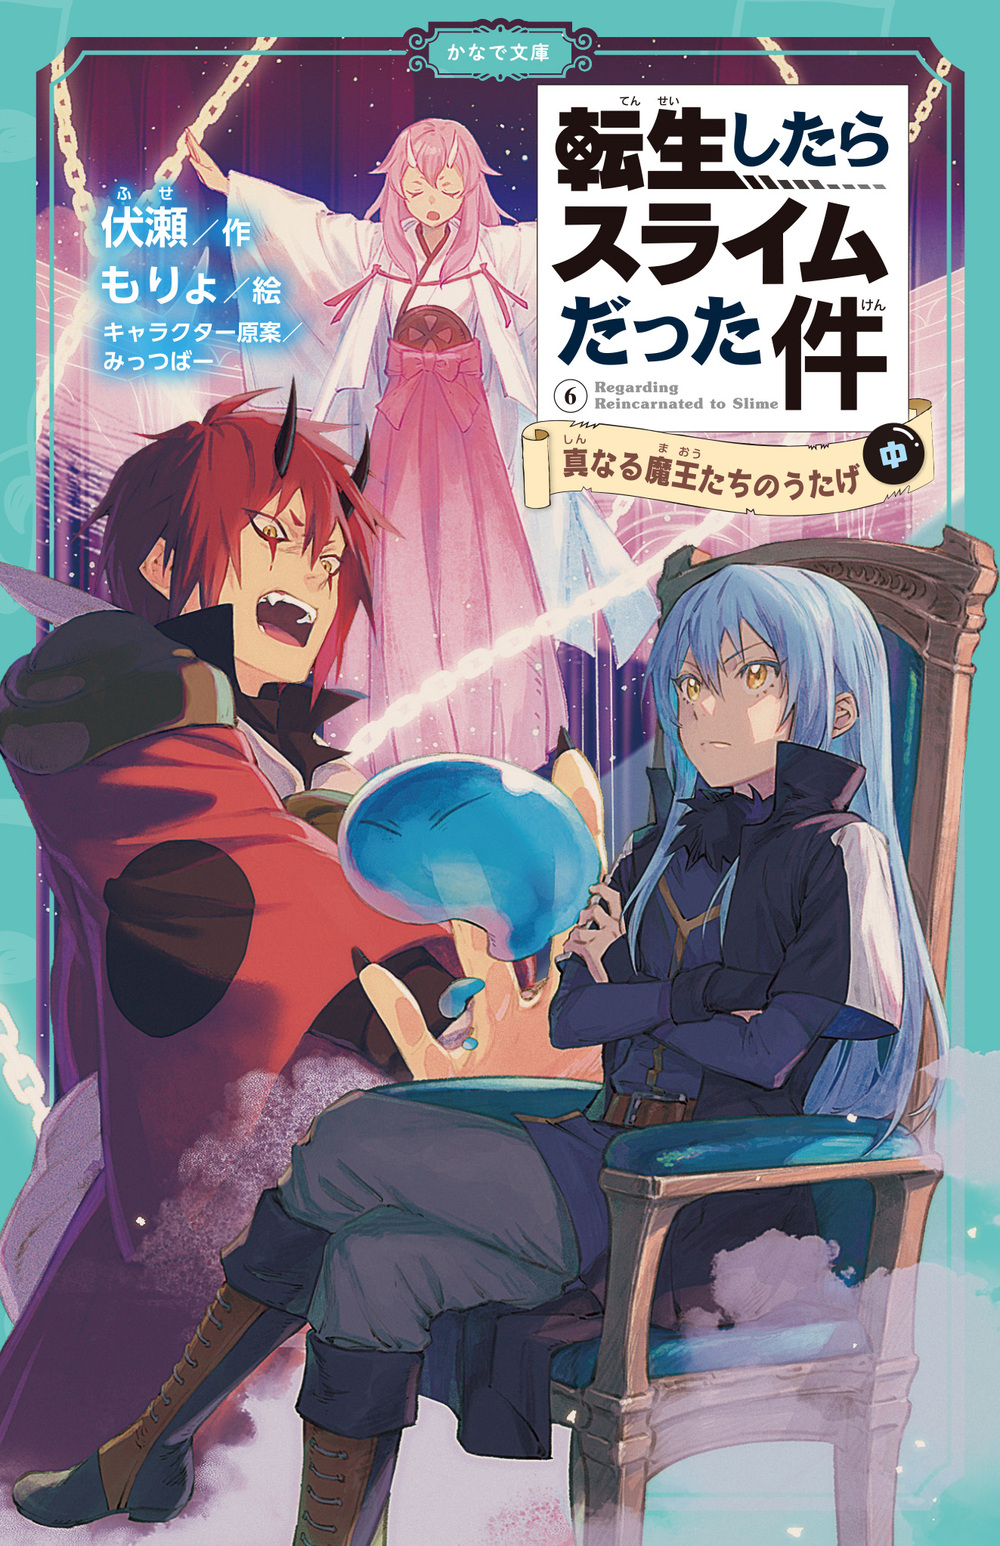 Manga Volume 12, Tensei Shitara Slime Datta Ken Wiki